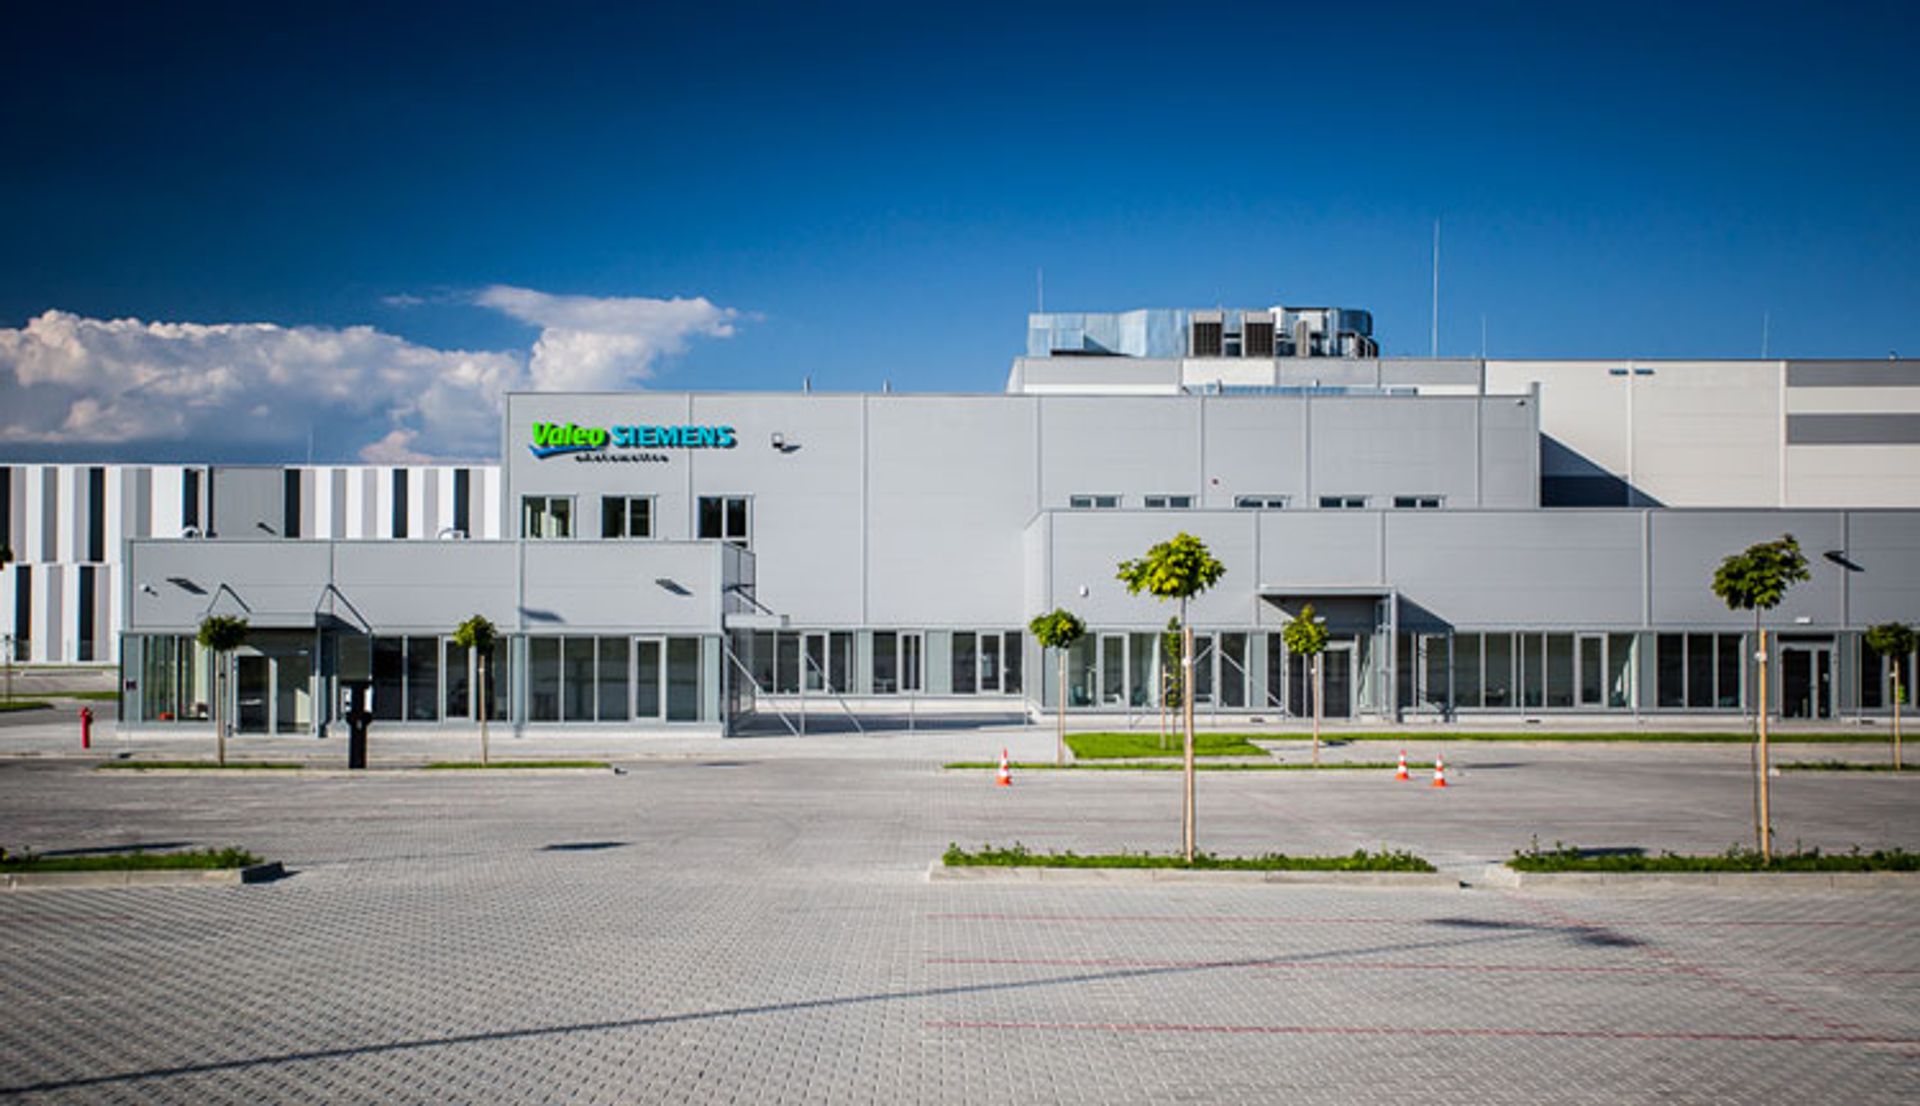 Ponad 500 osób znajdzie pracę w nowej fabryce Valeo Siemens eAutomotive w Czechowicach-Dziedzicach